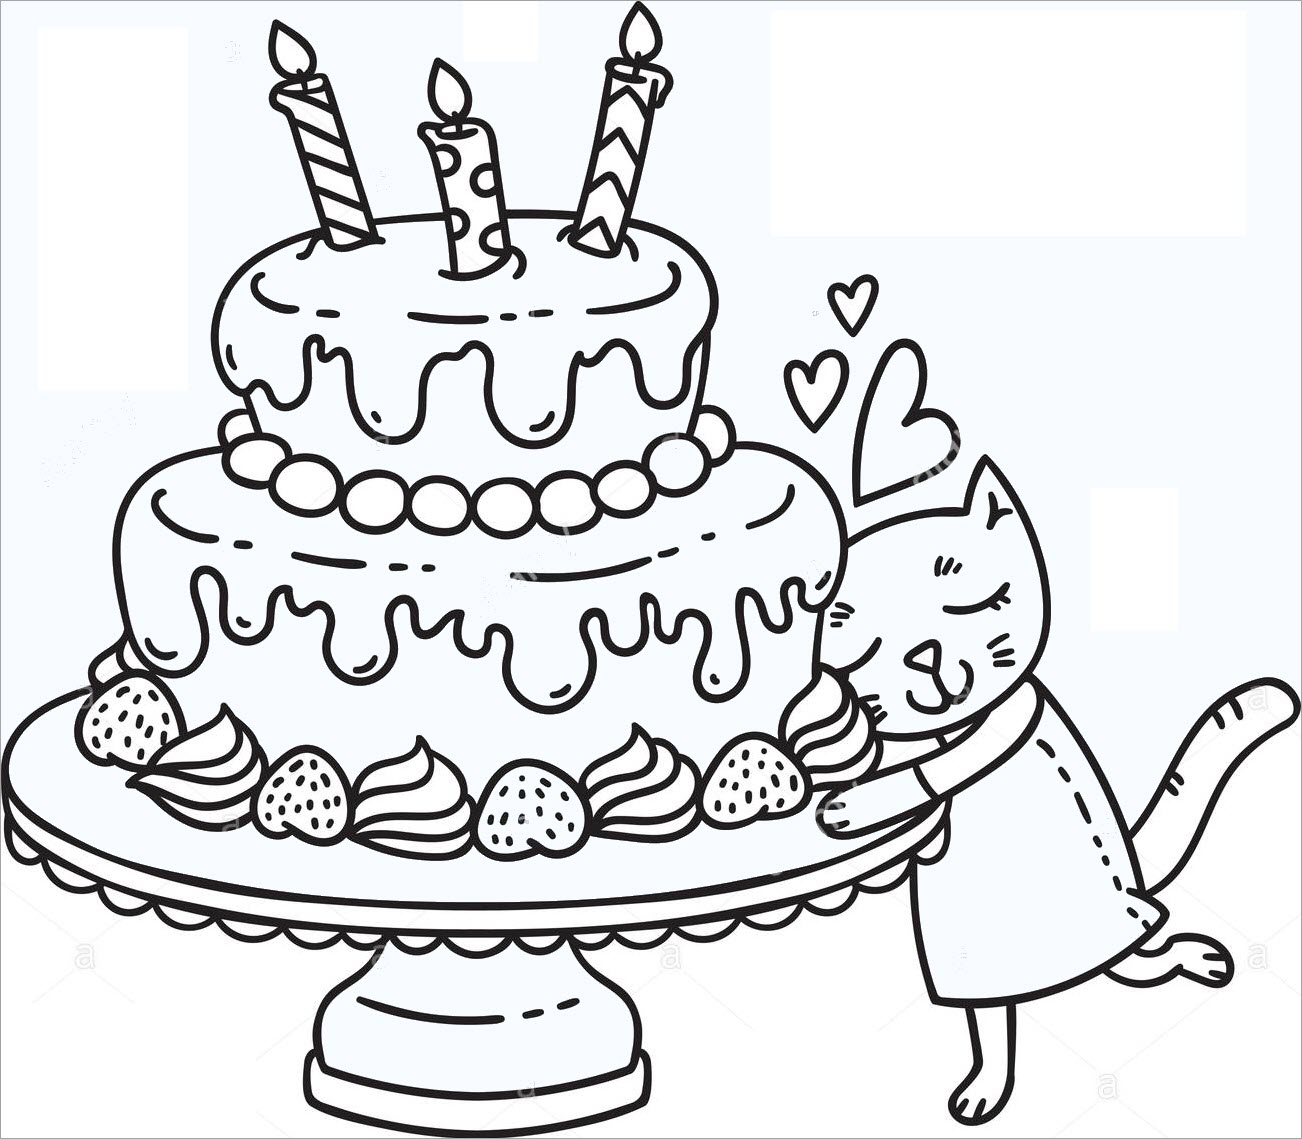 Tìm Hiểu Tranh tô màu bánh sinh nhật đơn giản đẹp nhất cho bé yêu  Trường  THPT An Lạc Thôn